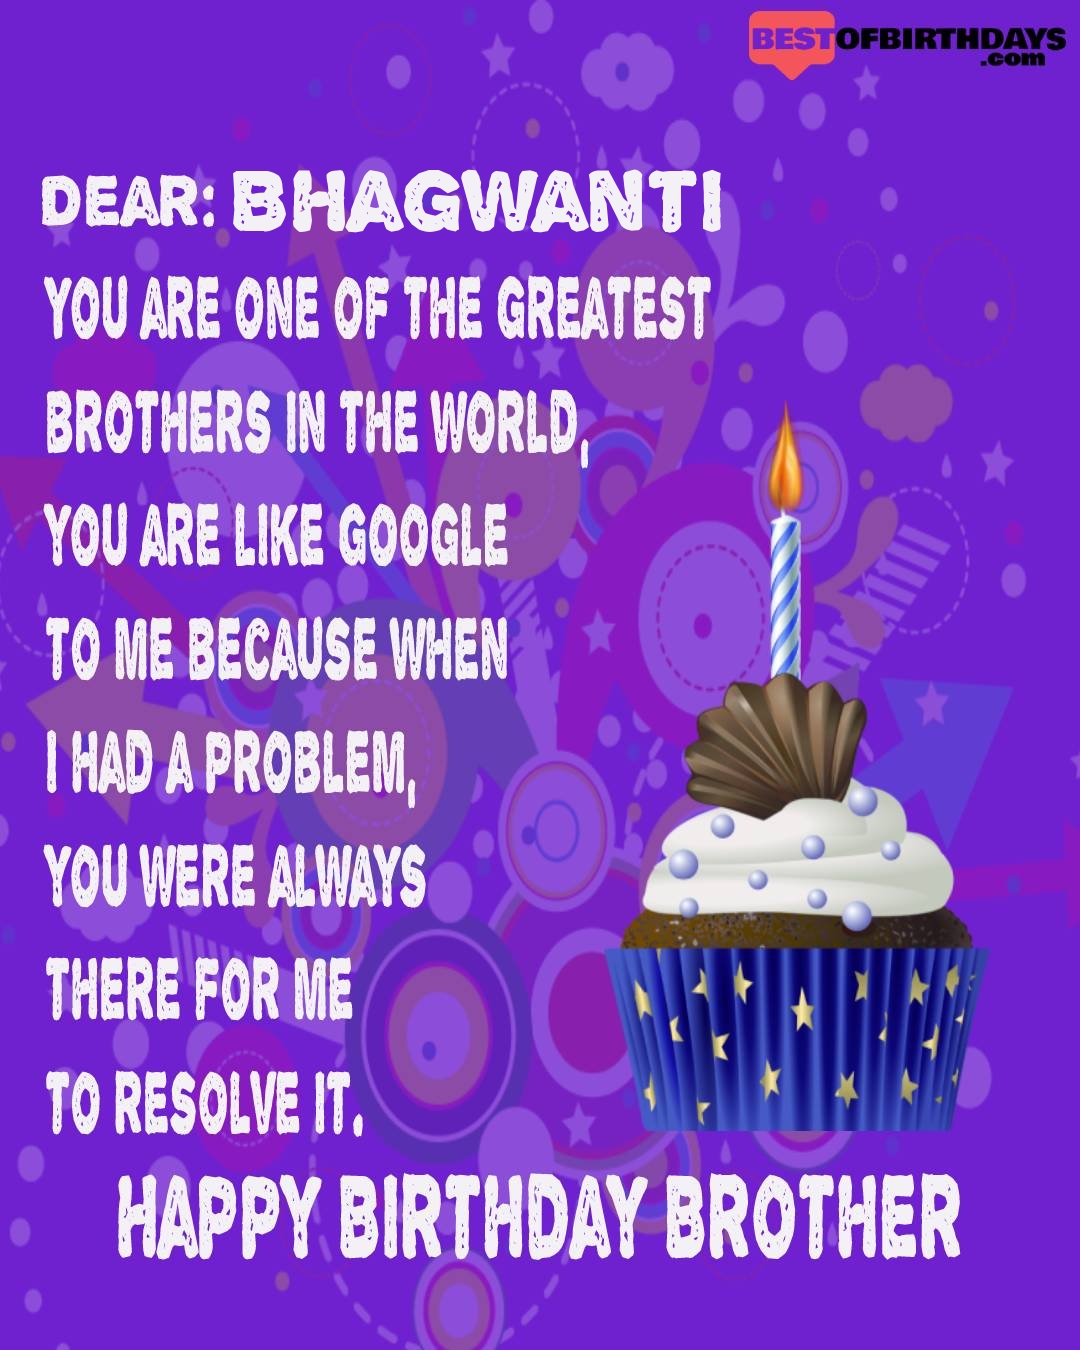 Happy birthday bhagwanti bhai brother bro